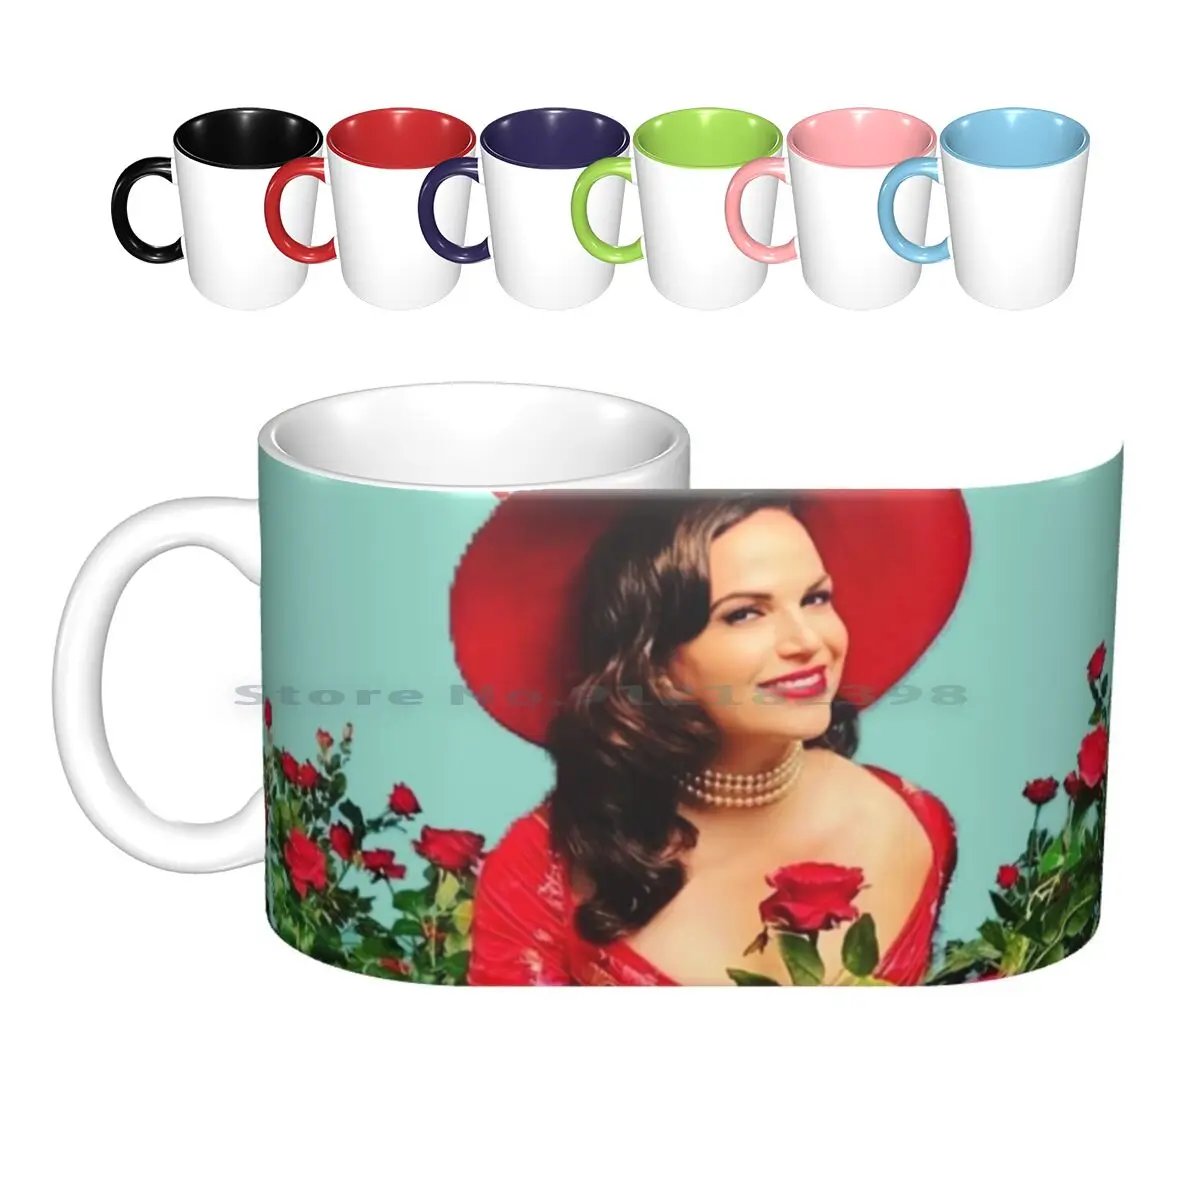 

Керамические кружки Rita Castillo, кофейные чашки, Кружка для молока и чая, Рита Кастильо, почему женщины убивают Лану парриллу один раз